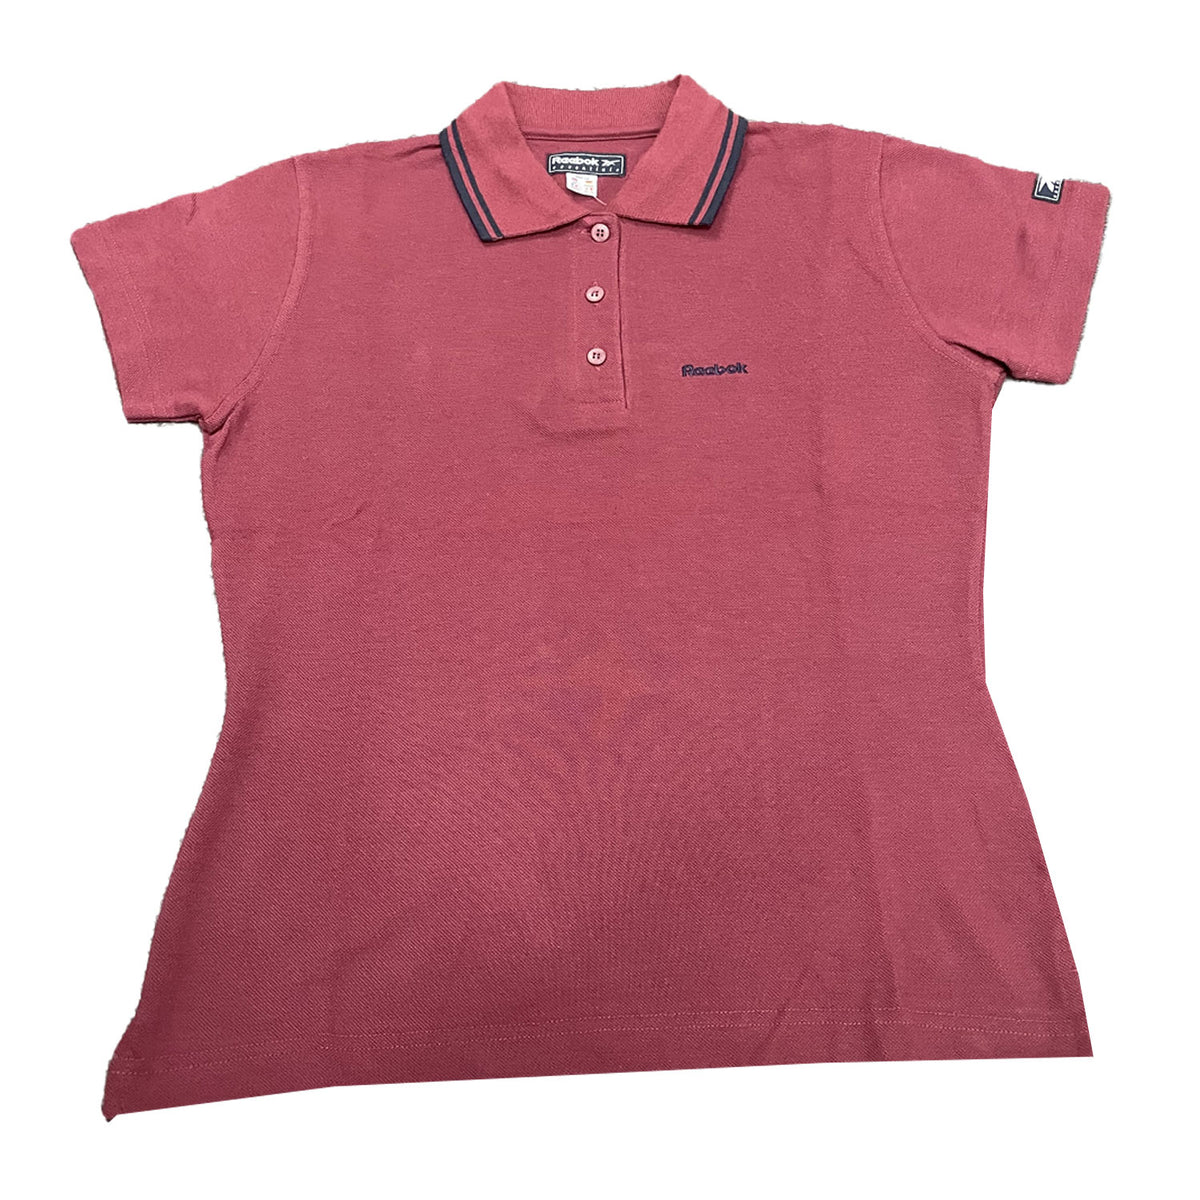 Reebok Womens Athletes Classic Polo Shirt - Burgundy - UK Size 12